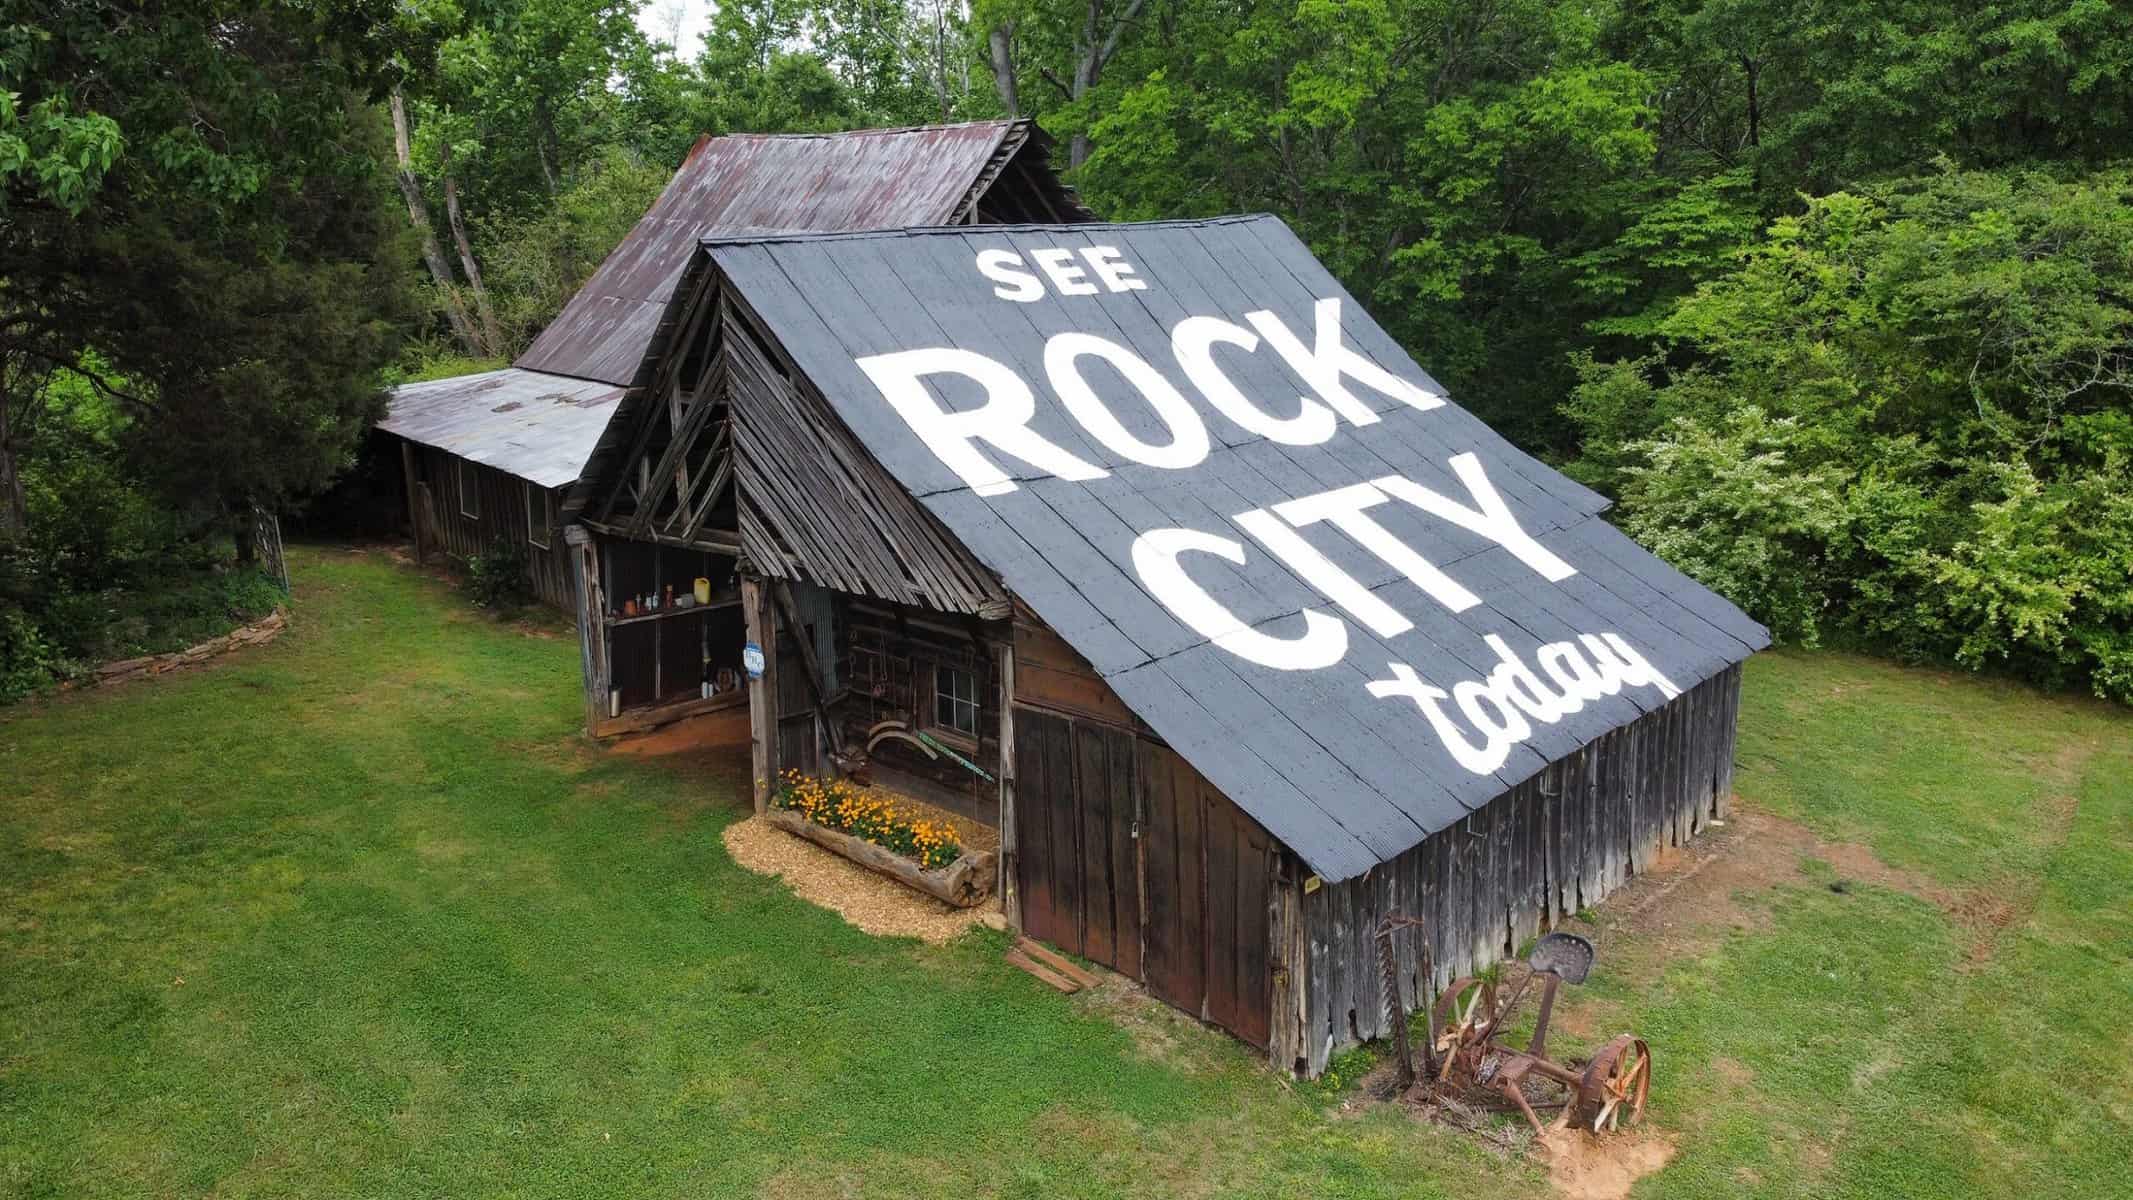 see rock city barns 90th anniversary